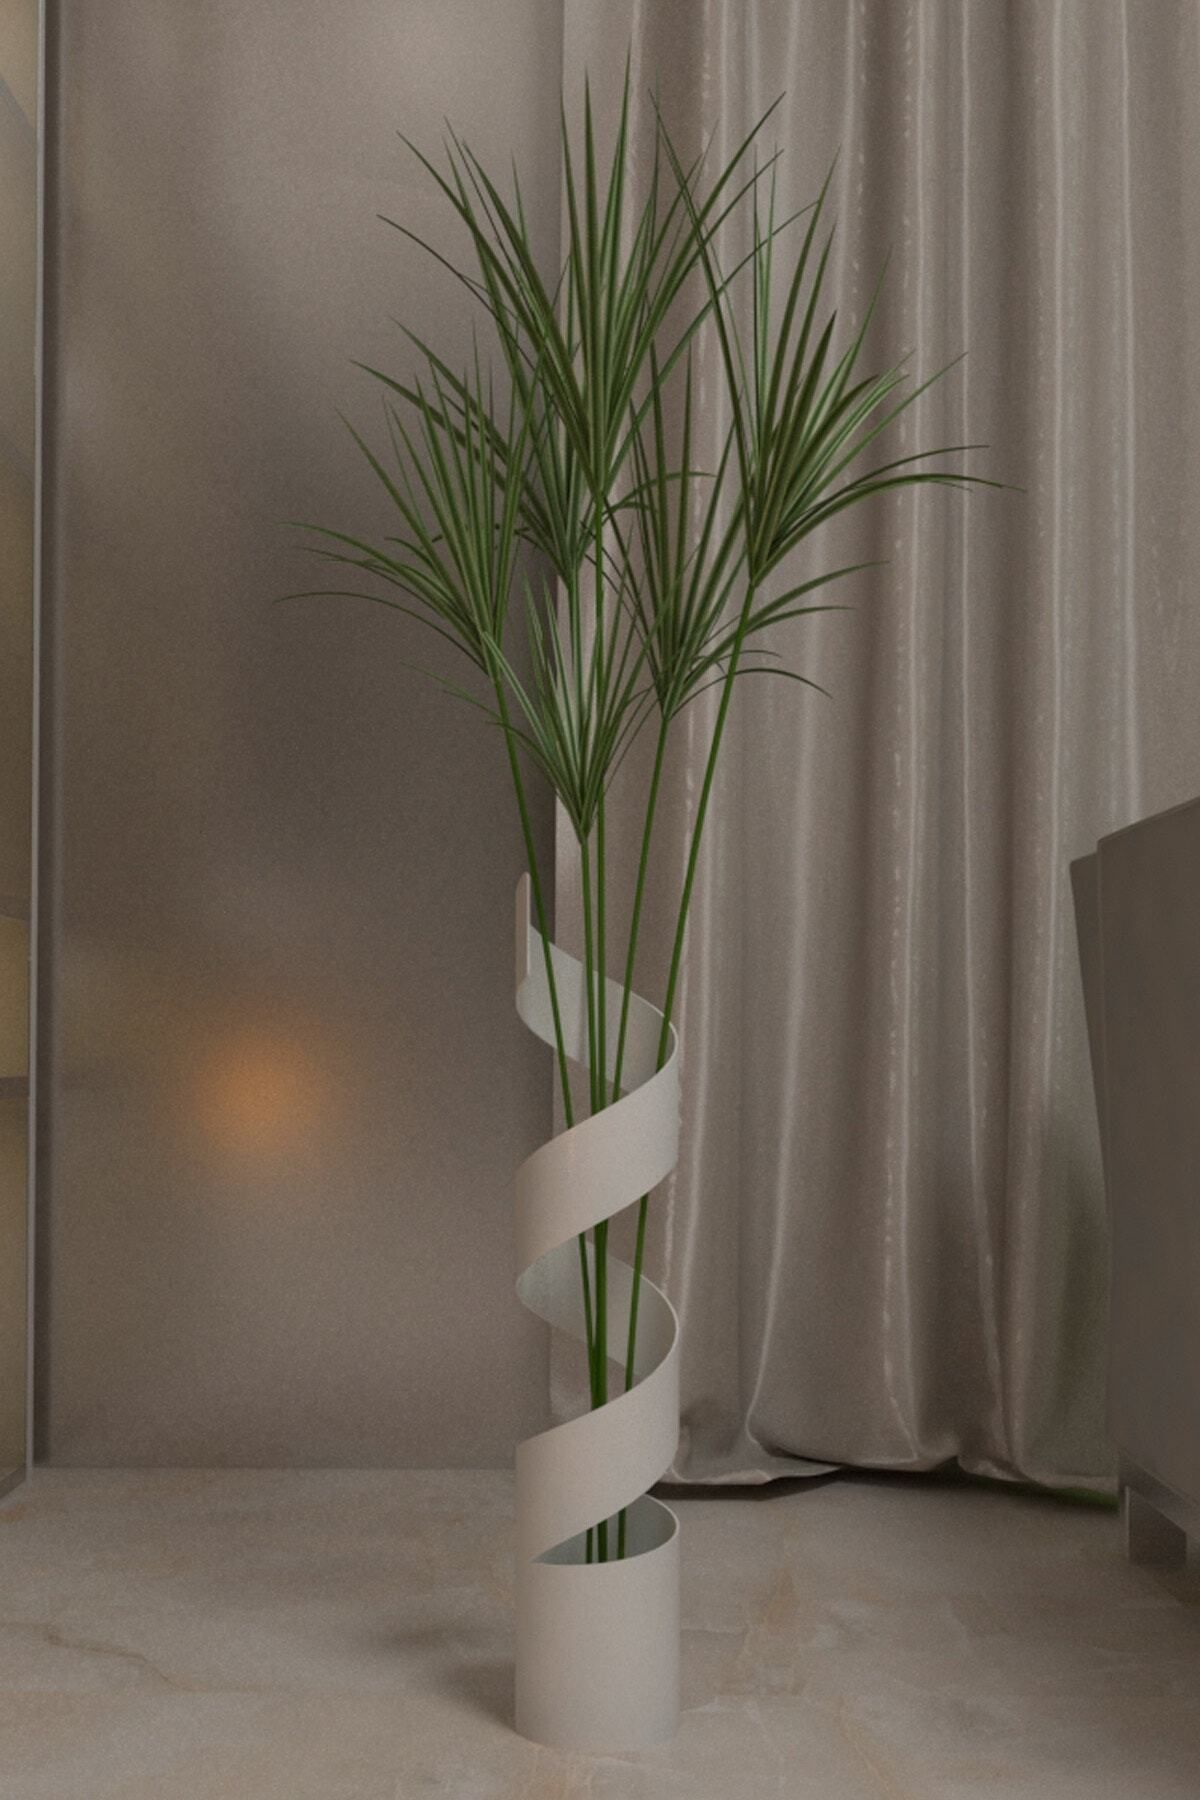 Segi Home Decor Uzun Büyük Metal Vazo Beyaz Renk Yükseklik 60 cm Genişlik 11,4 cm Pampas İçin Vazo Çiçek Vazosu